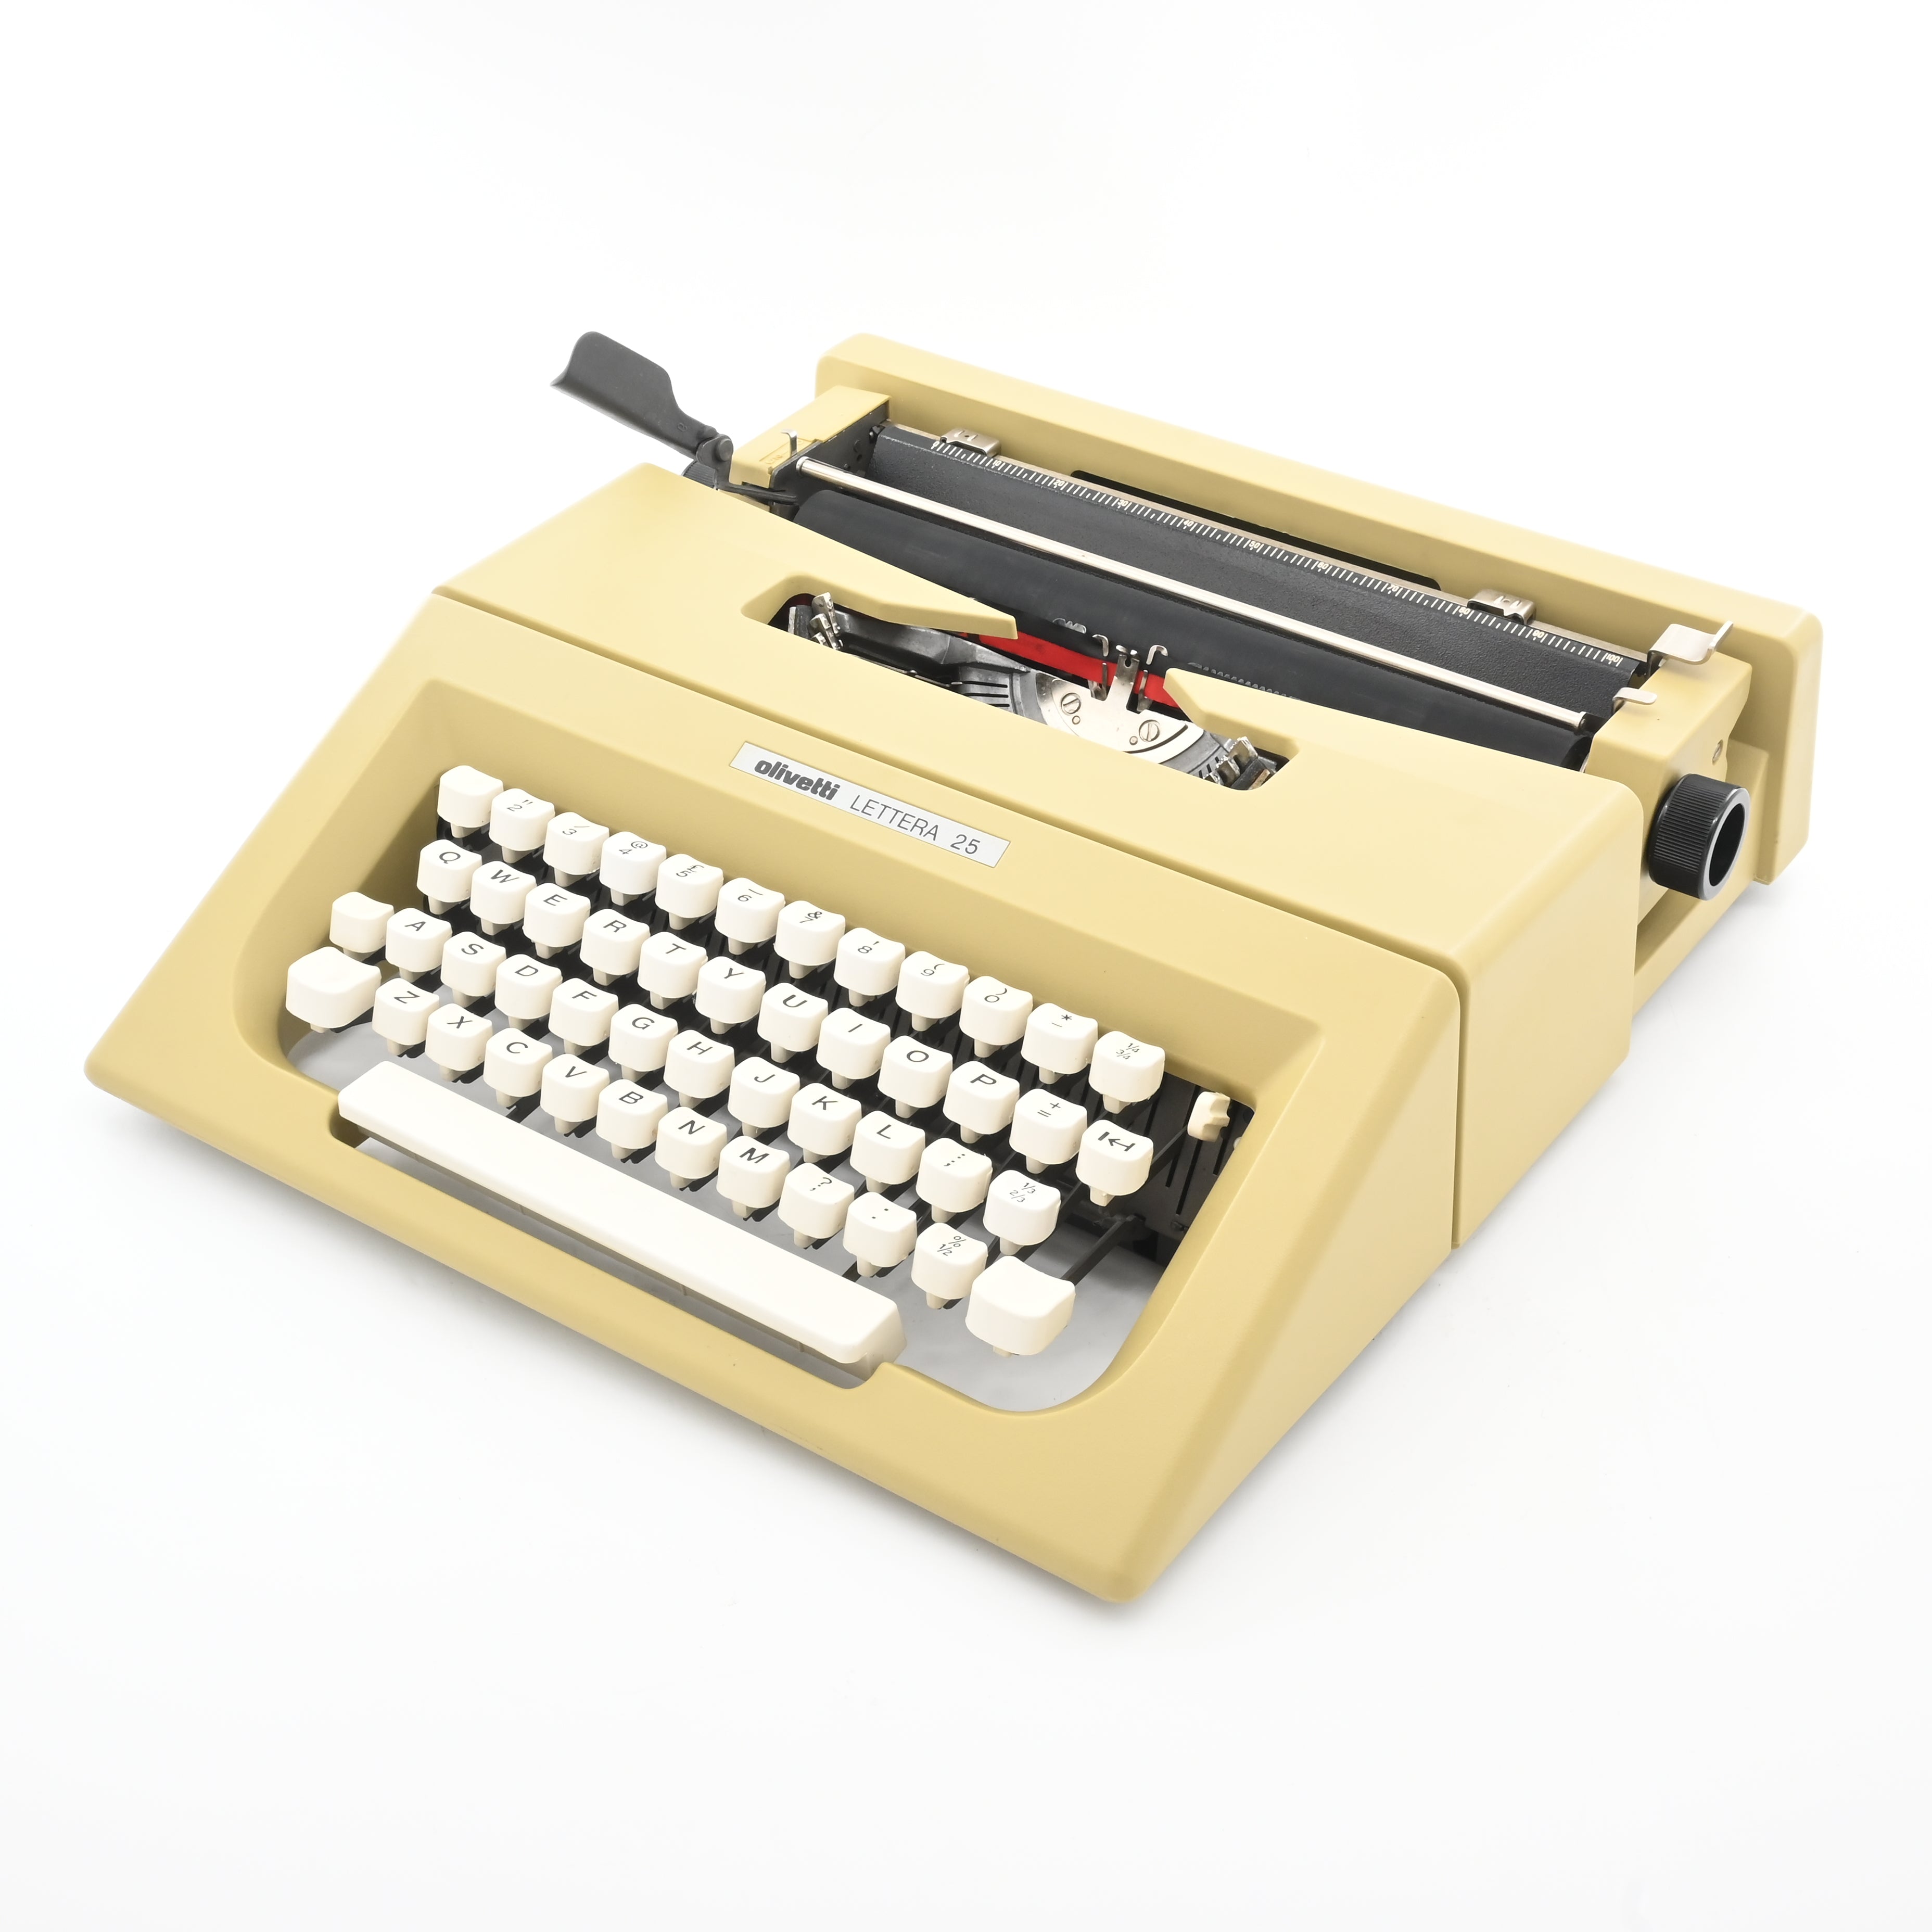 Olivetti Lettera 25 Typewriter